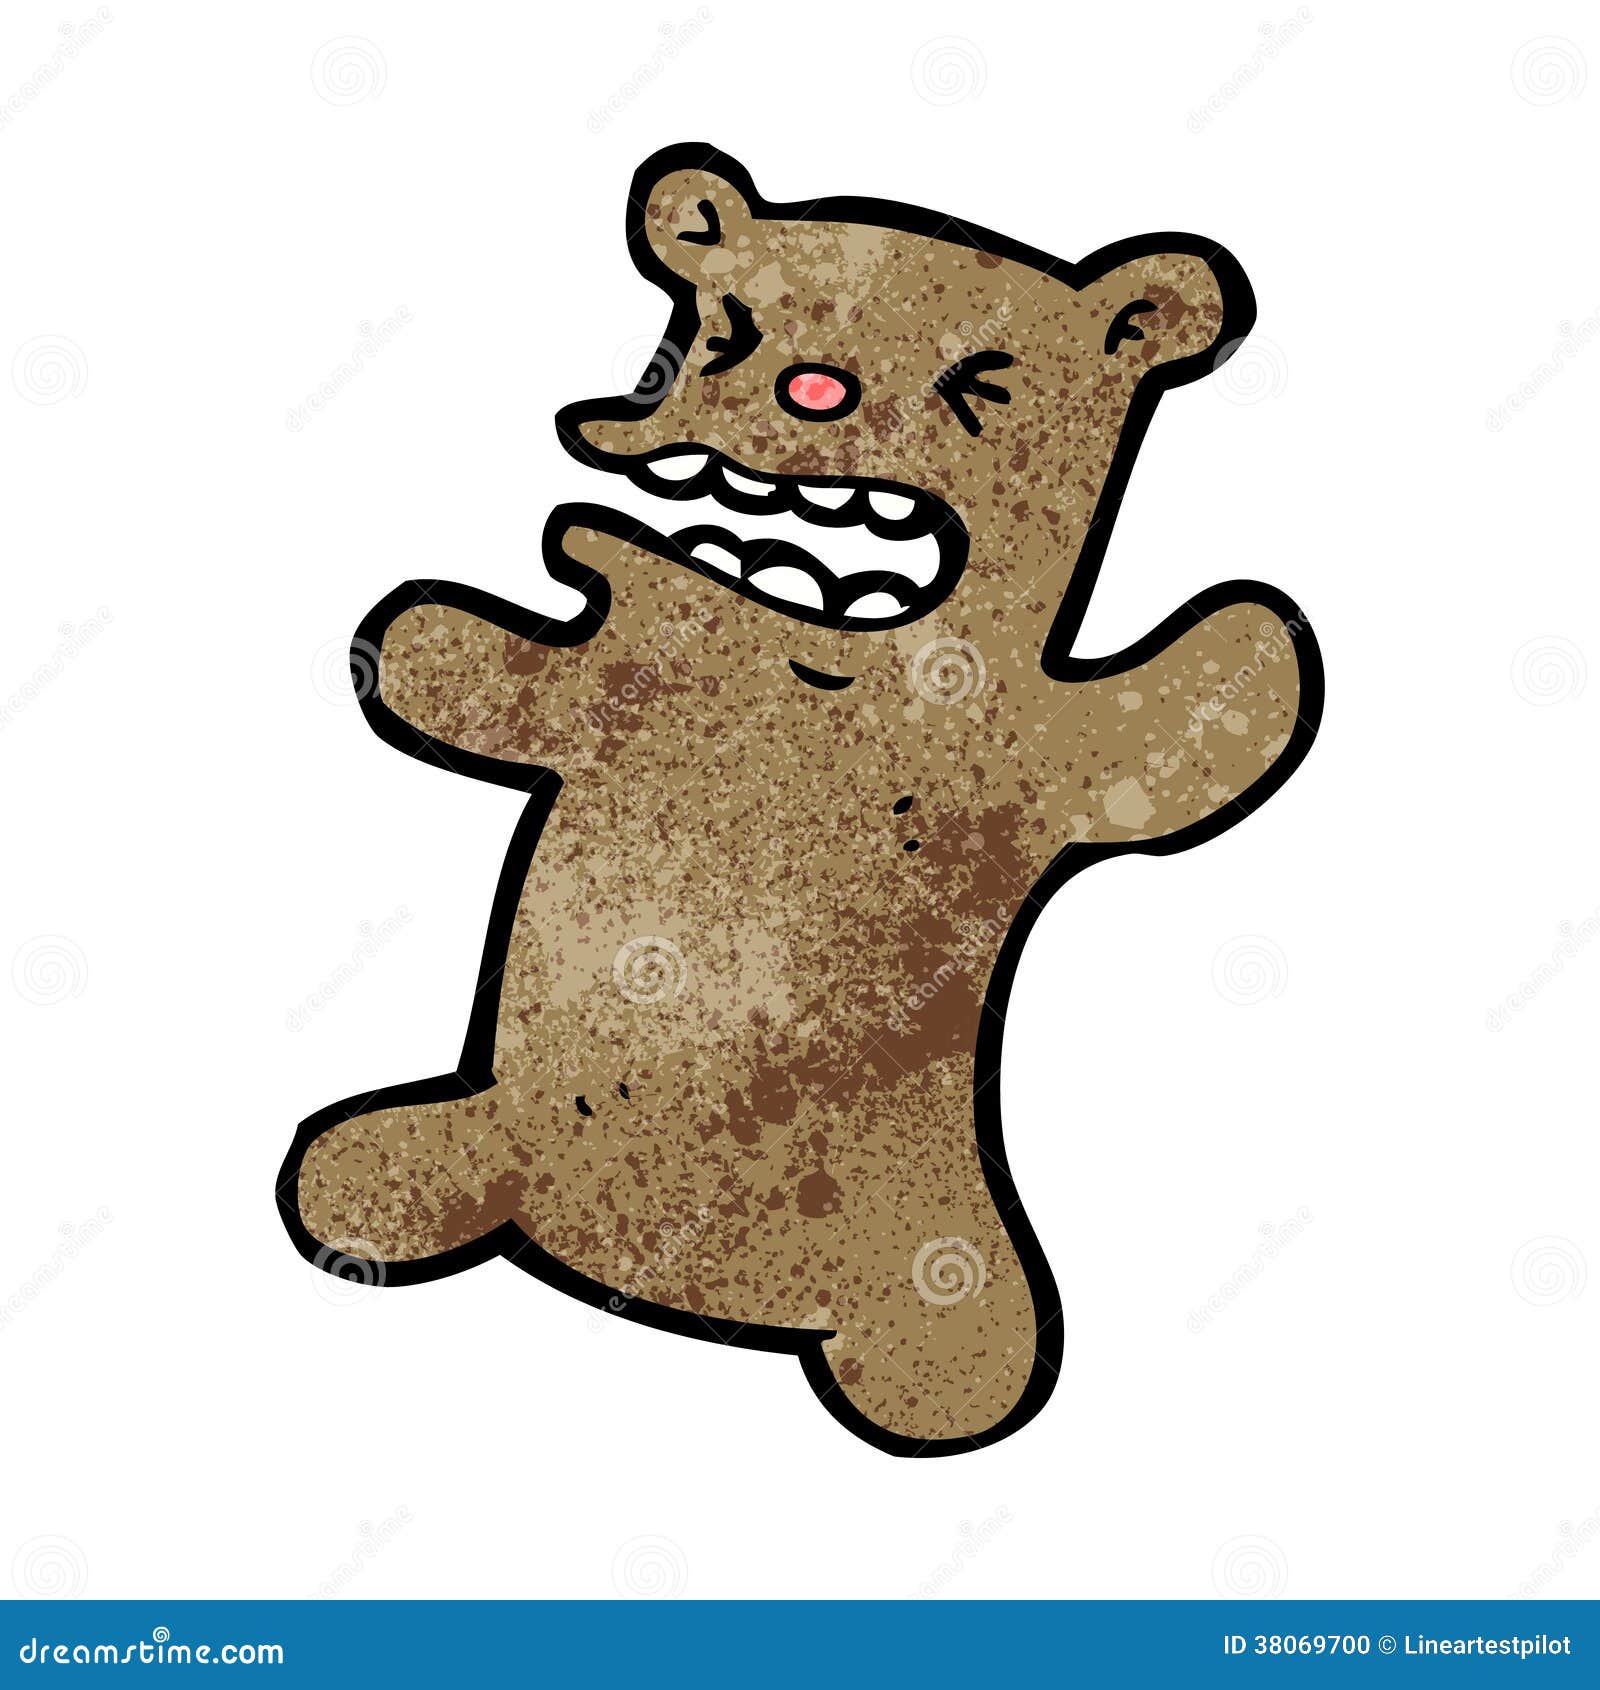 Cartoon angry teddy bear stock vector. Illustration of cute - 38069700